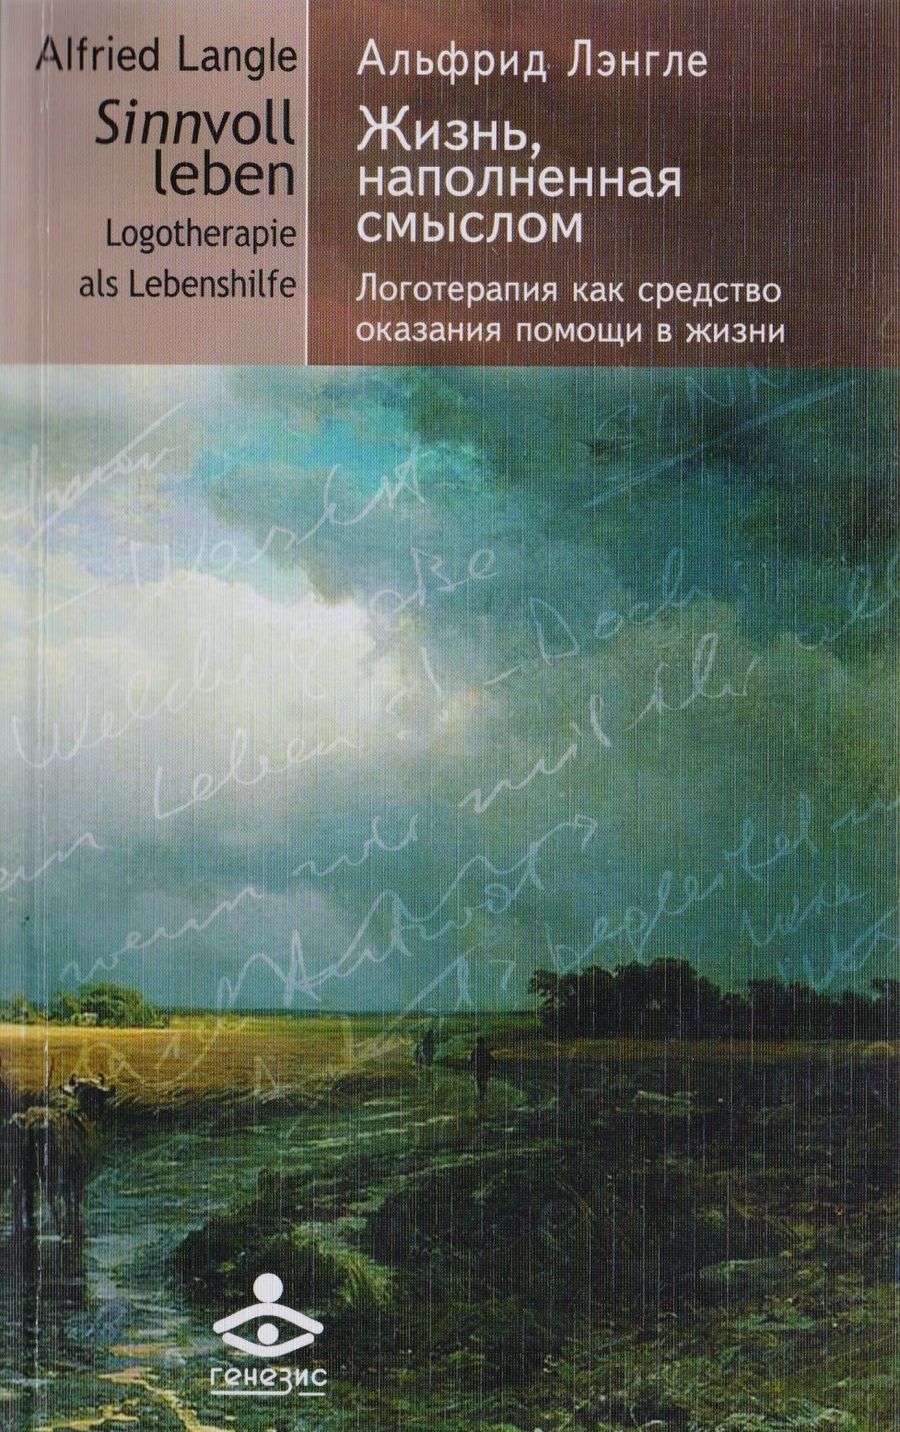 Обложка книги "Альфрид Лэнгле: Жизнь, наполненная смыслом. Логотерапия как средство оказания помощи в жизни"